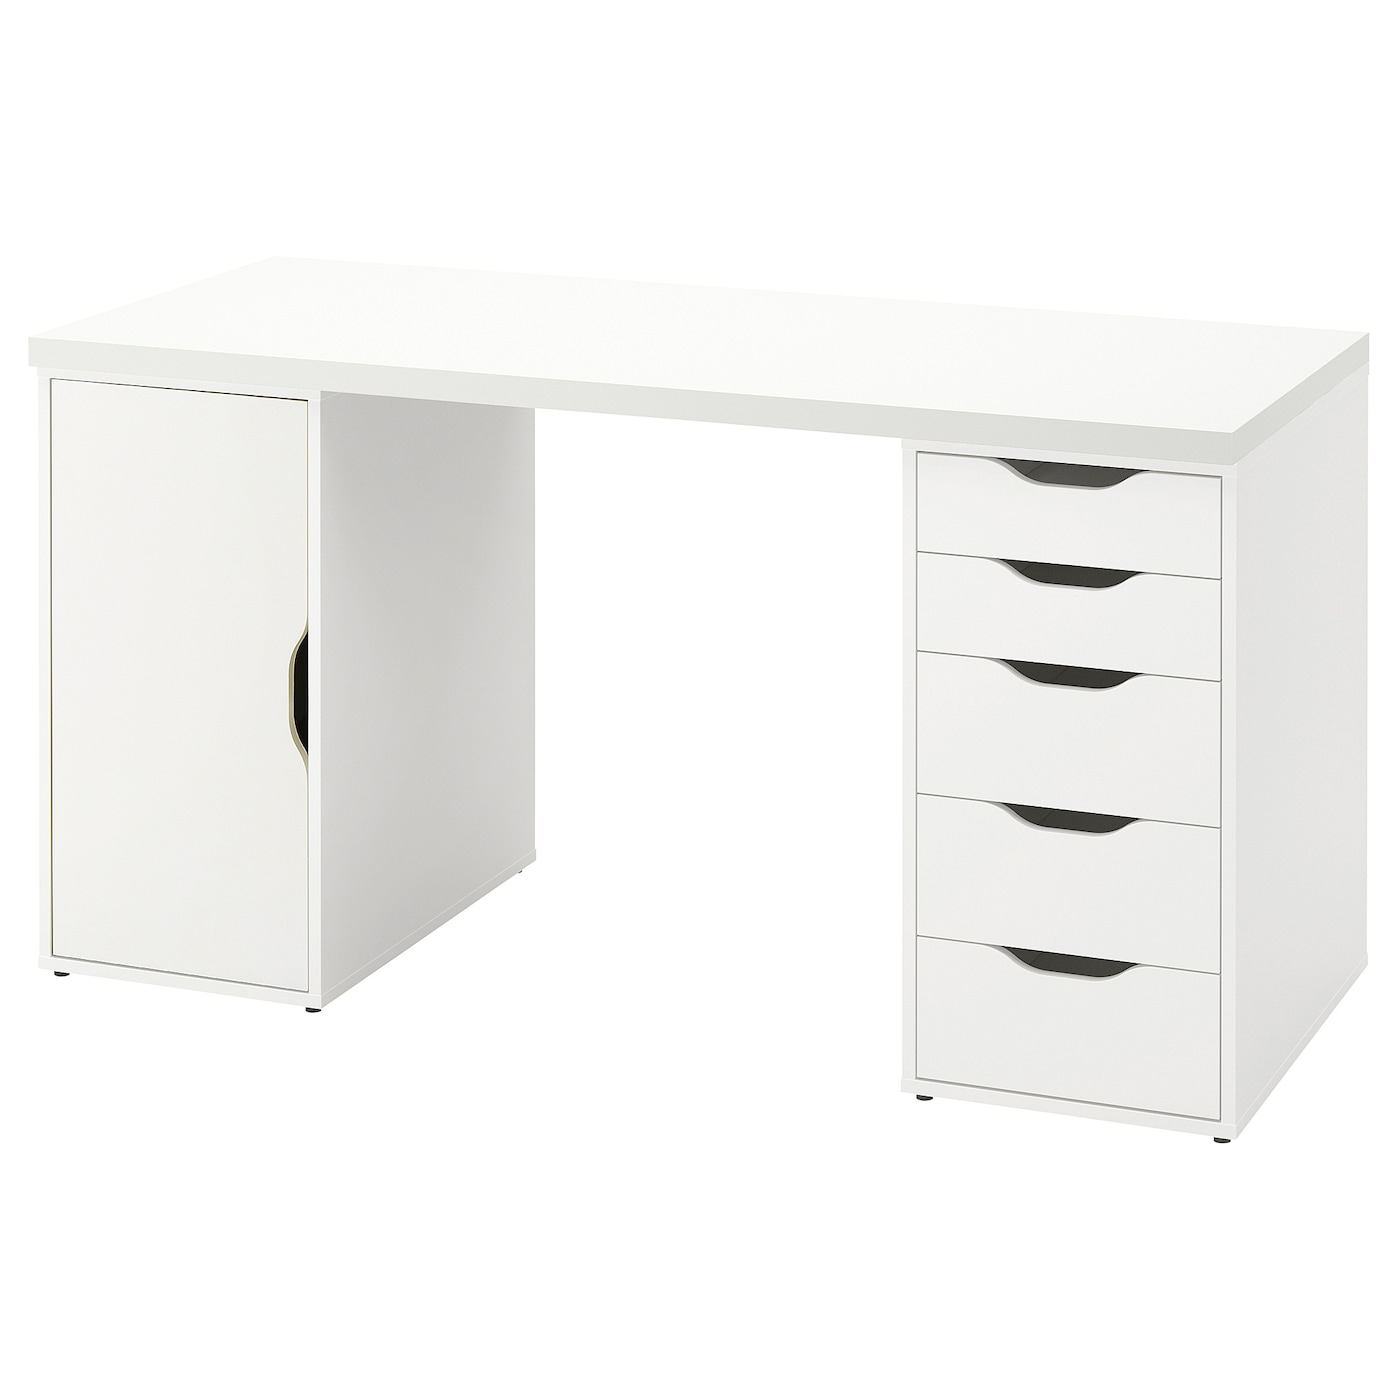 Письменный стол с ящиками - IKEA ALEX/АЛЕКС ИКЕА, 140x60 см, белый